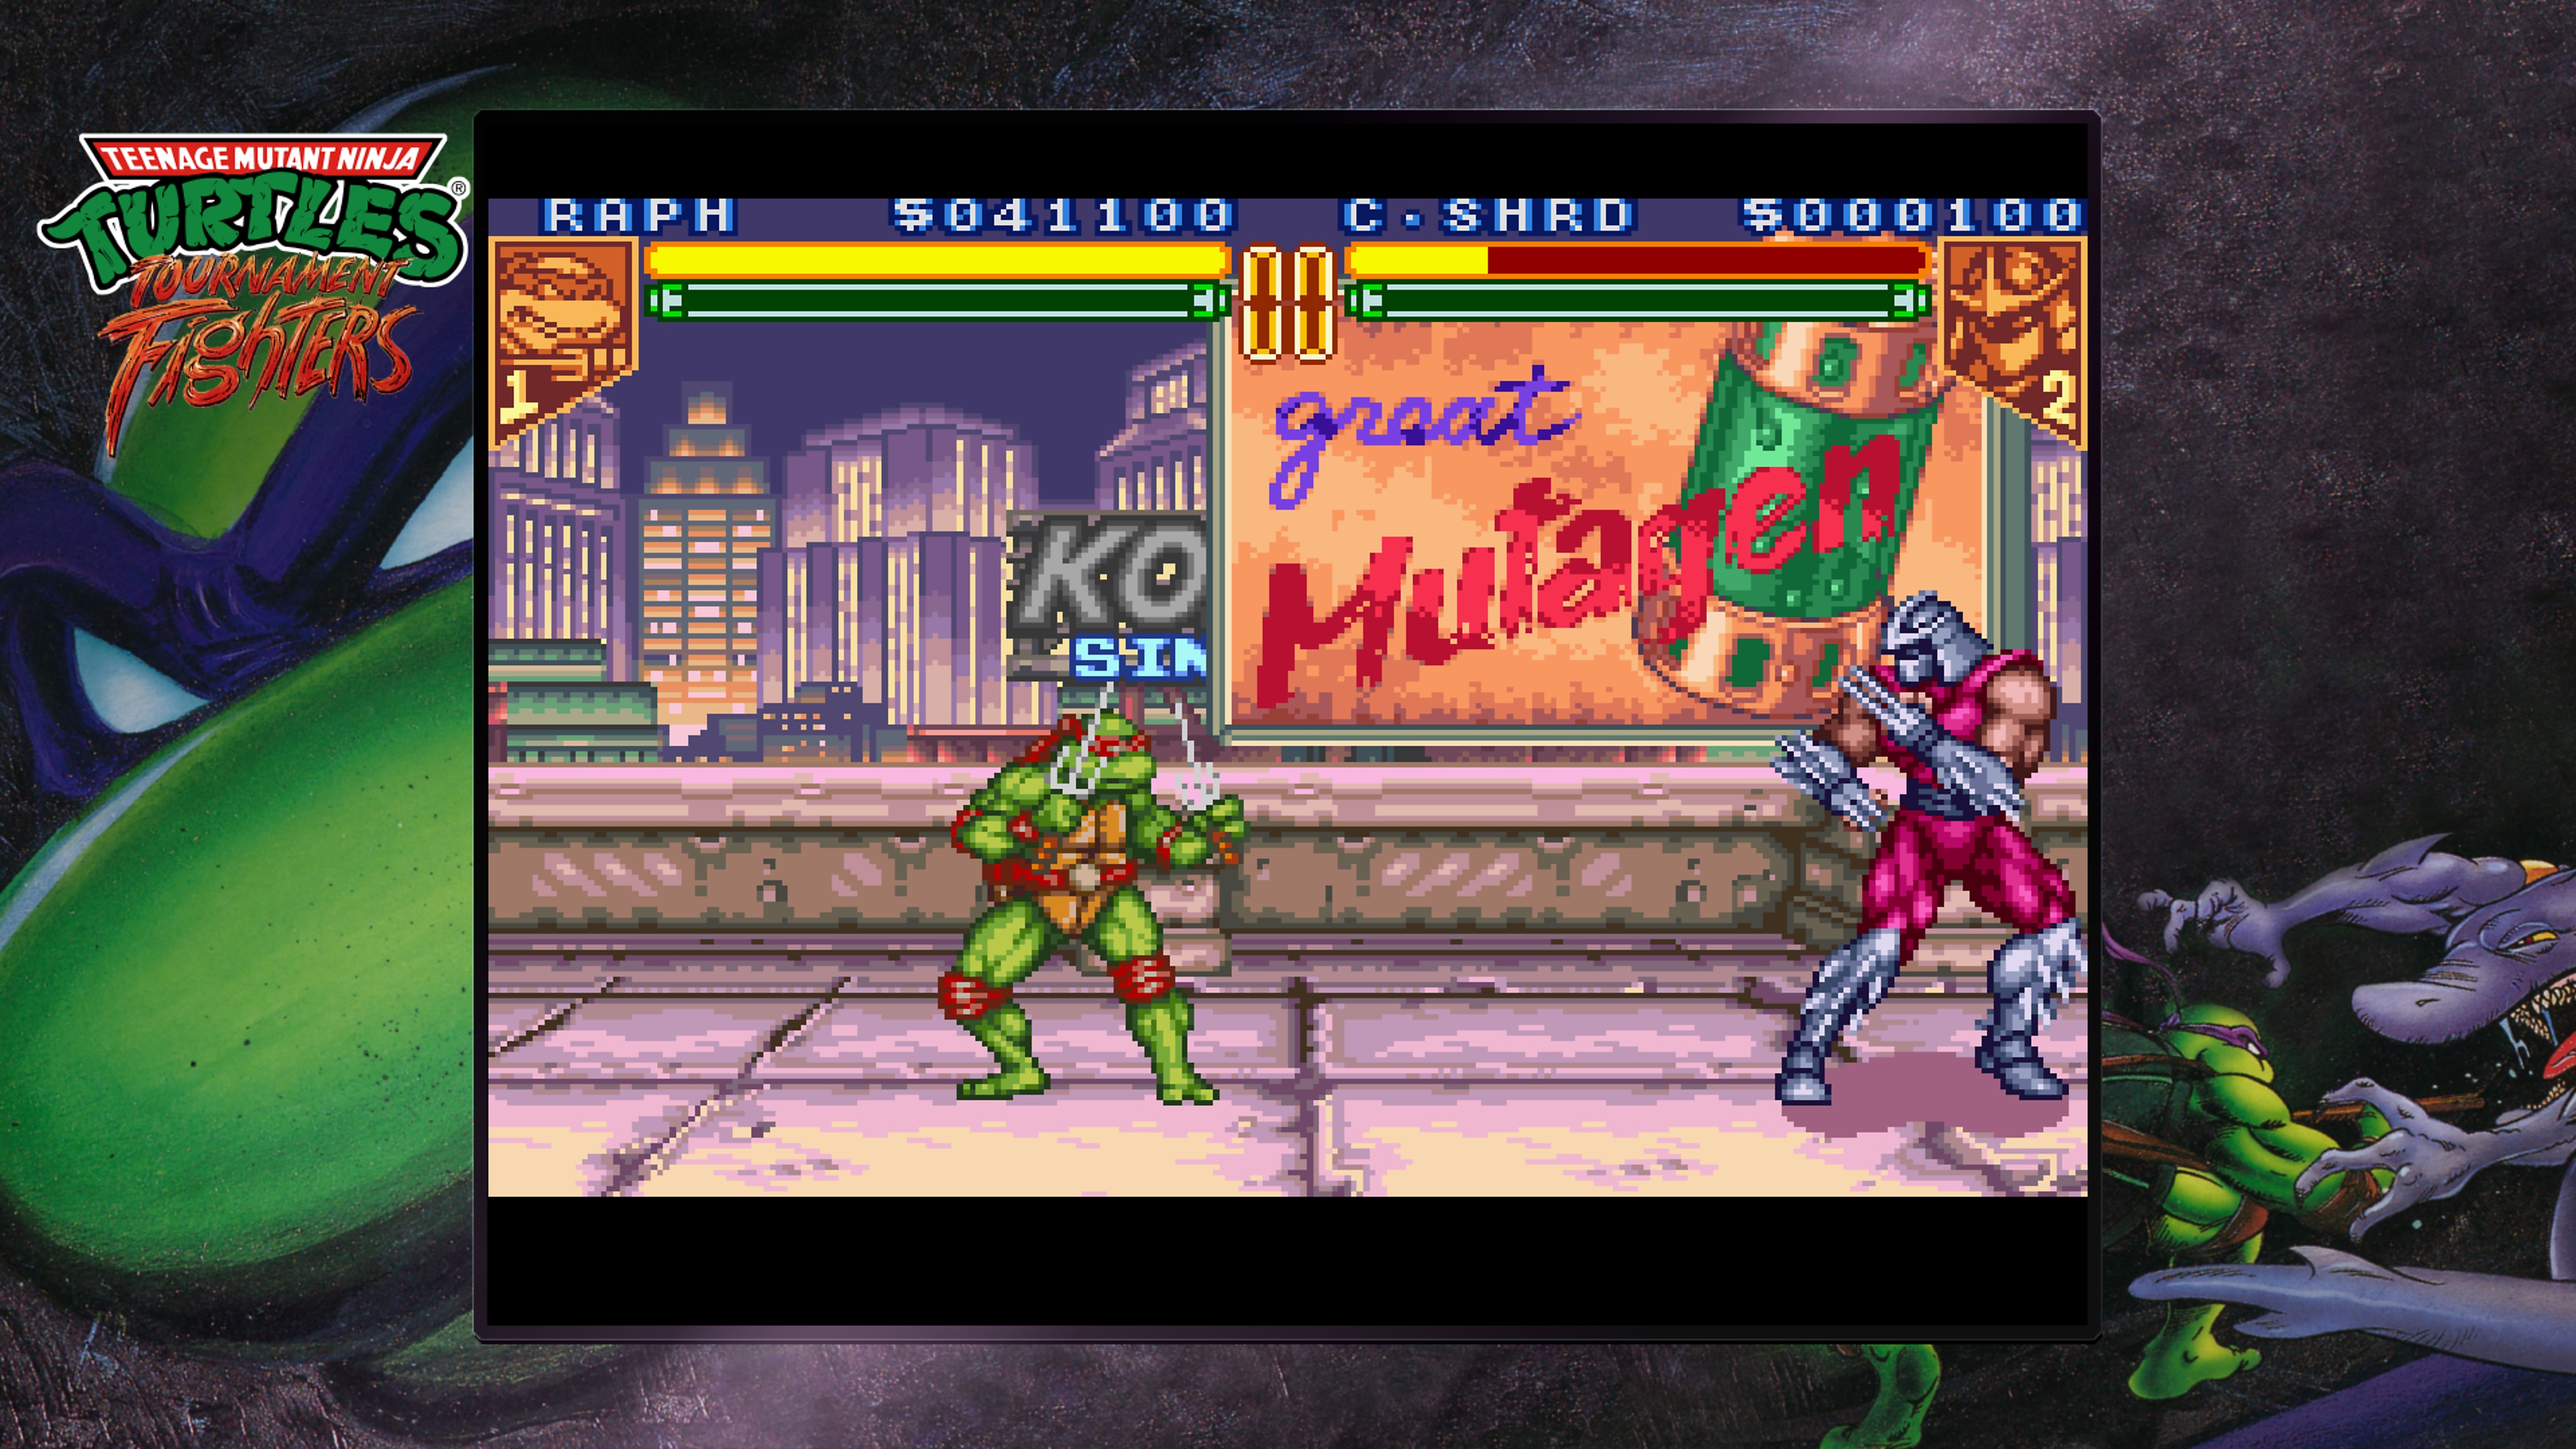 Teenage Mutant Ninja Turtles Collection - Tournament Fighters - Istantanea della schermata con Raffaello che combatte contro Shredder su un tetto